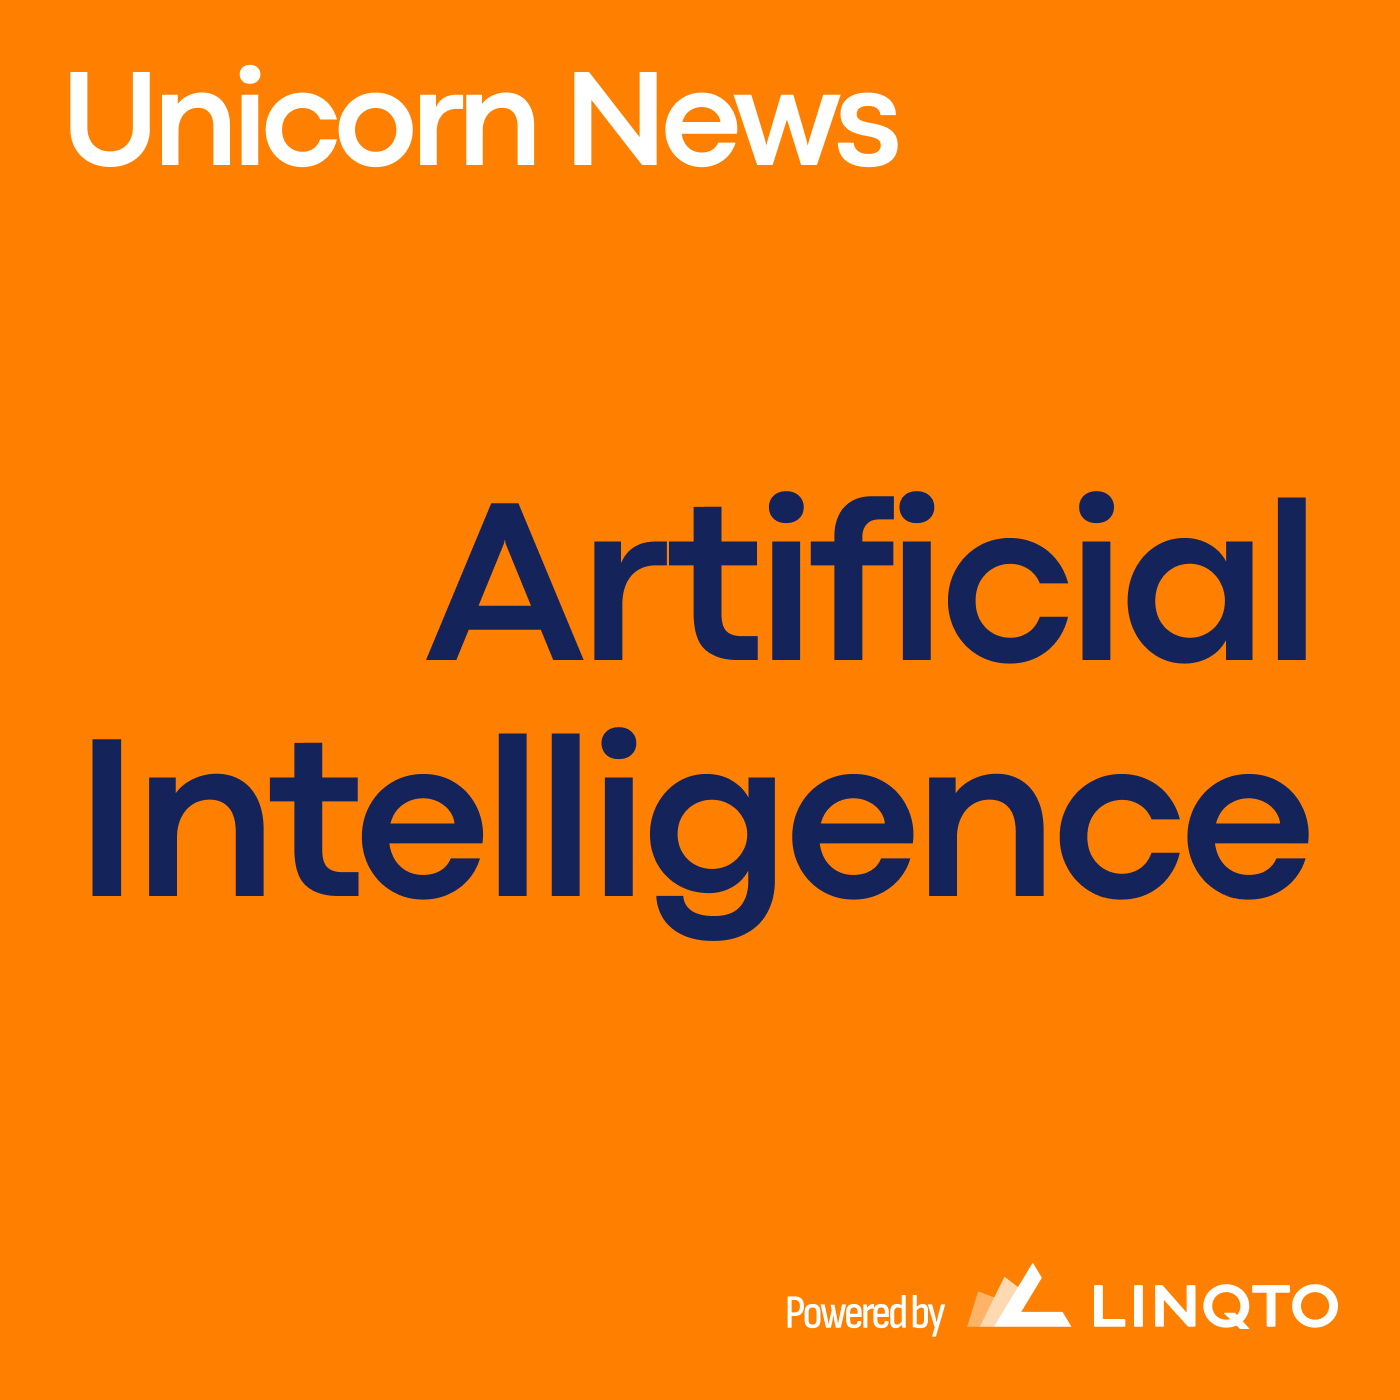 Unicorn News: The Latest in AI